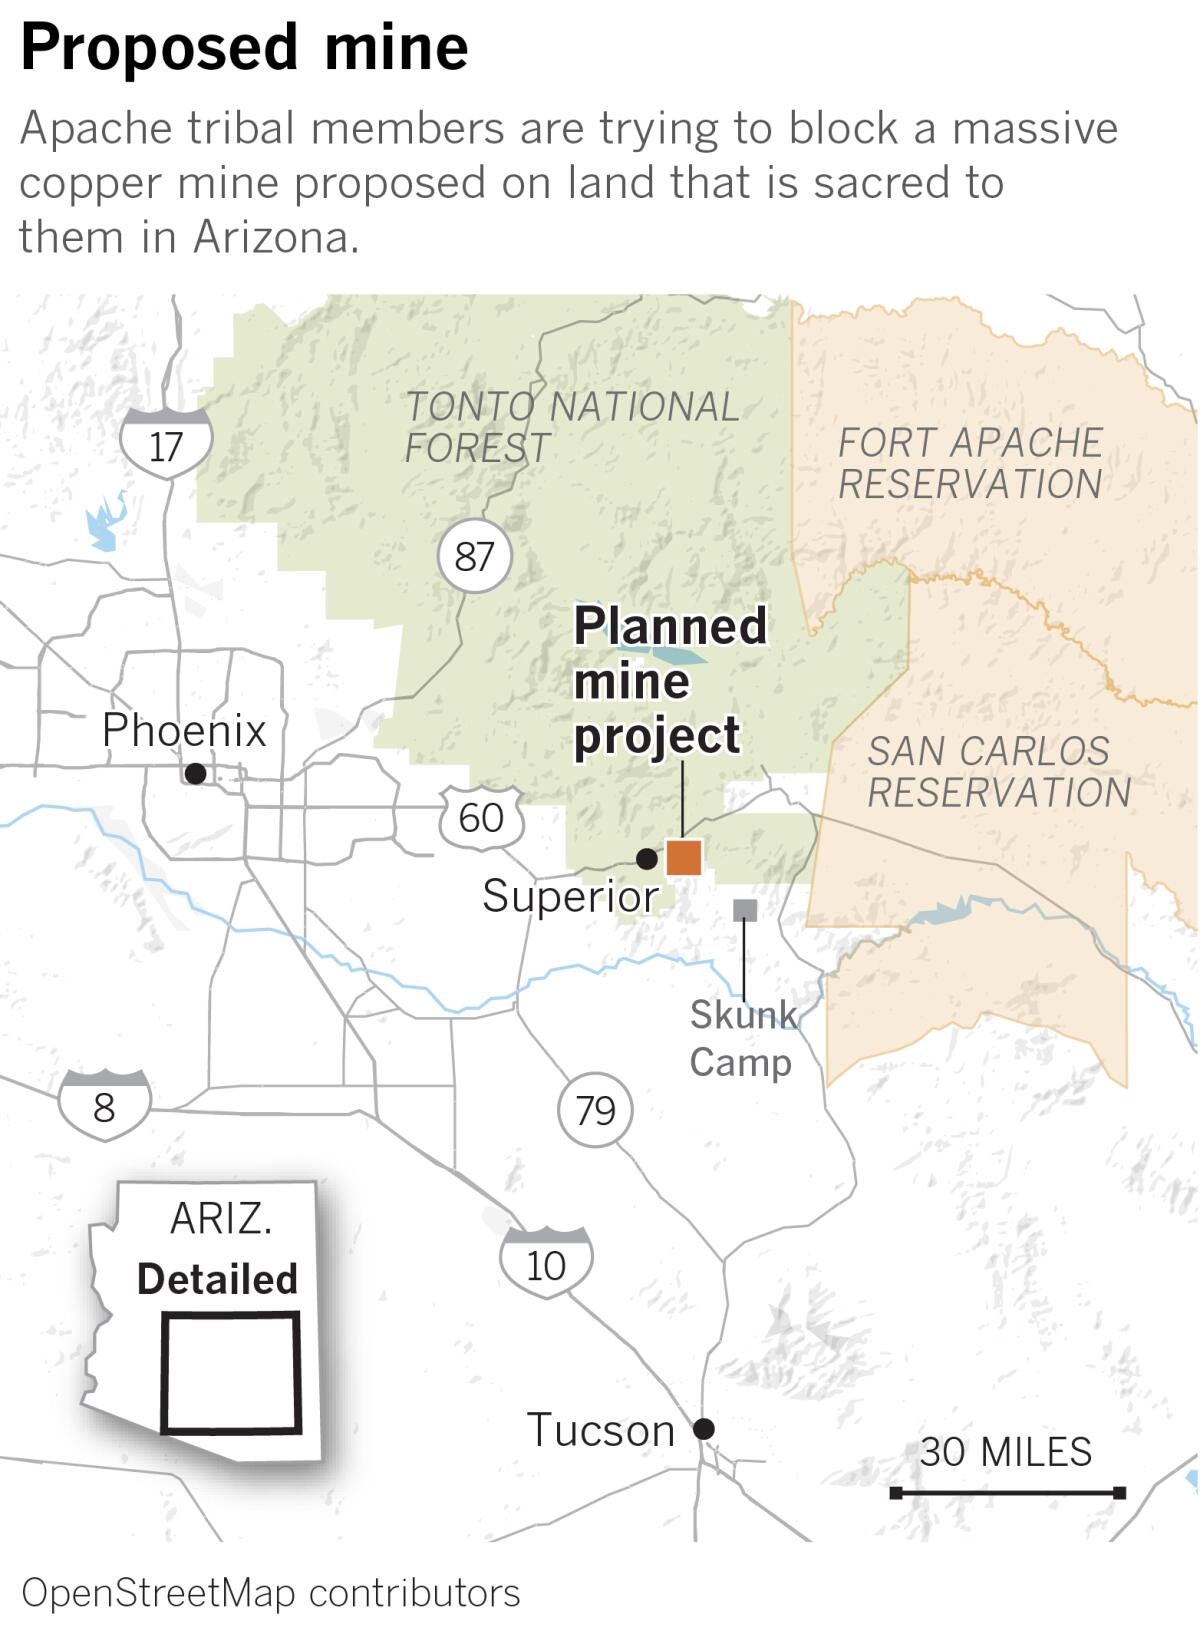 亚利桑那州拟建铜矿定位器